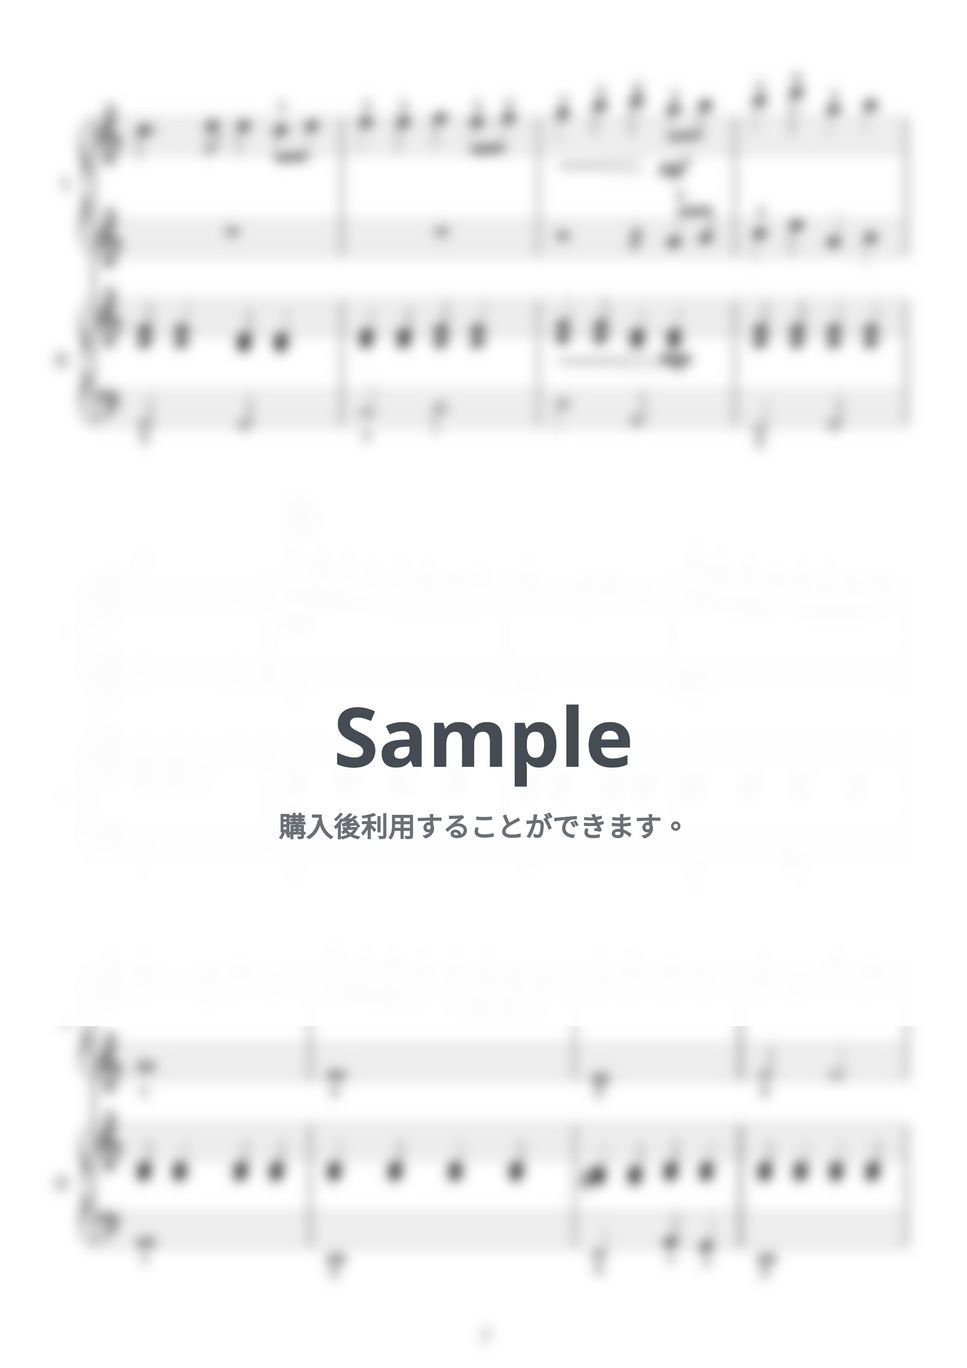 嵐 - ふるさと (ピアノ連弾/ショートサイズ) by norimaki